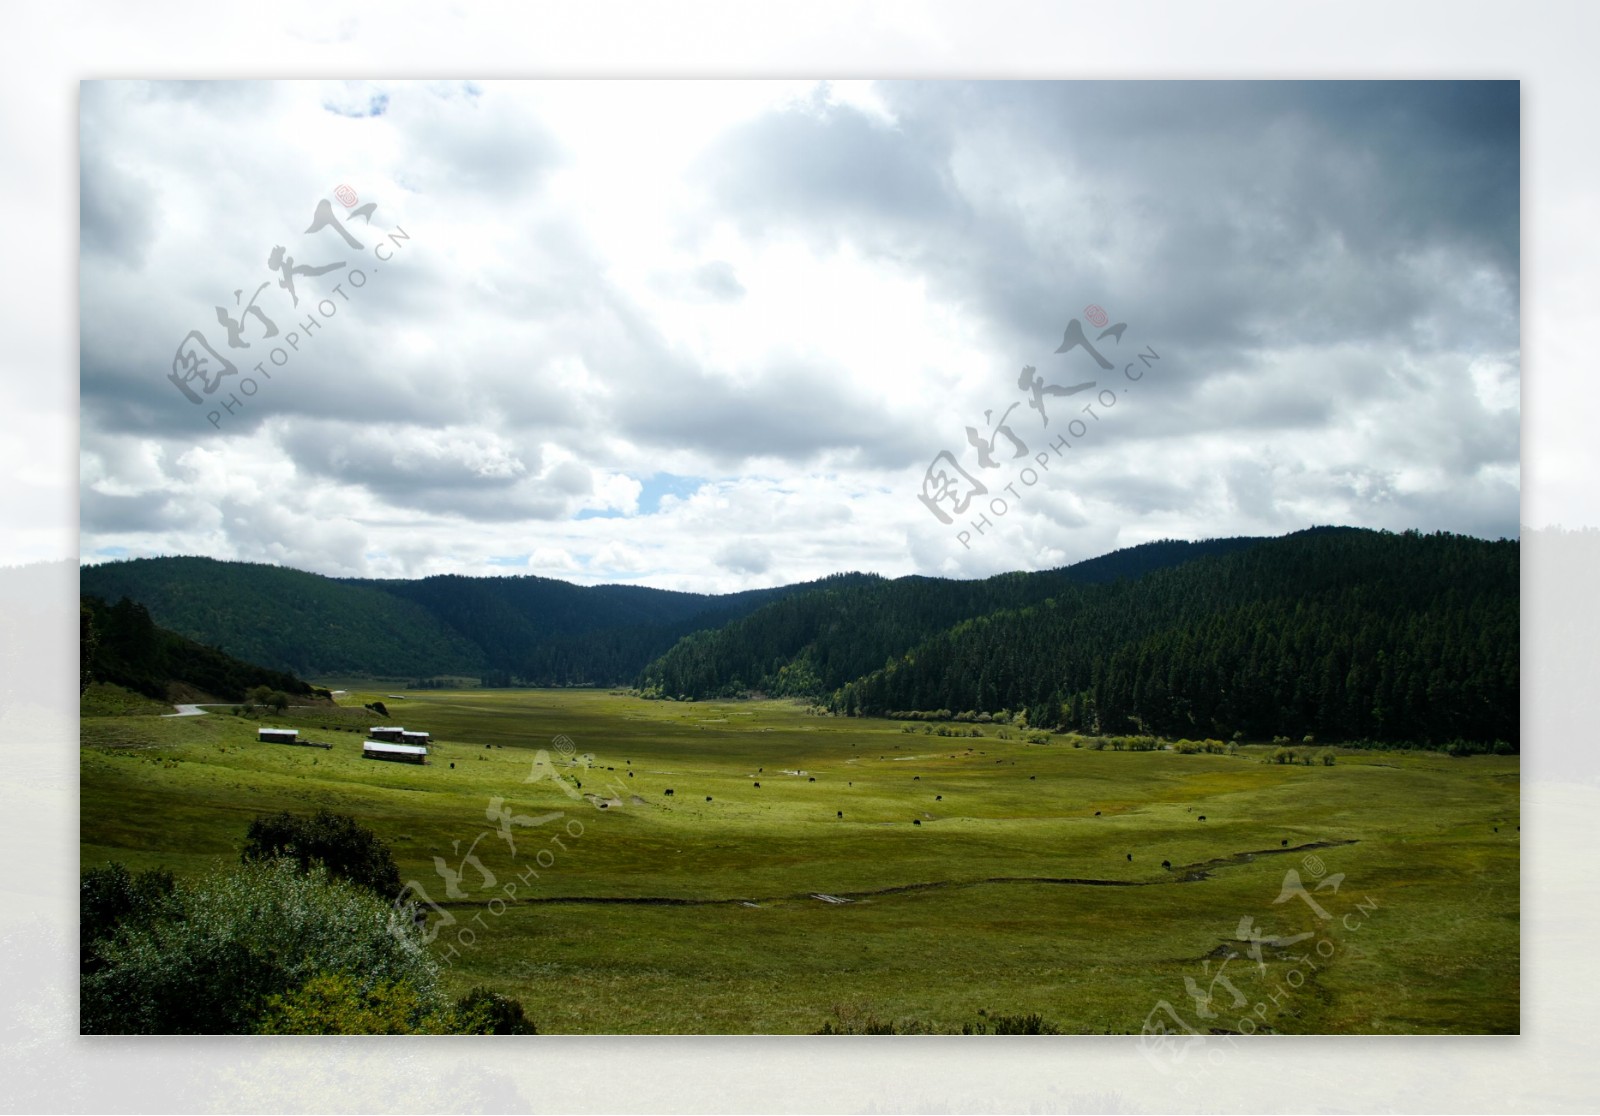 普达措国家公园图片